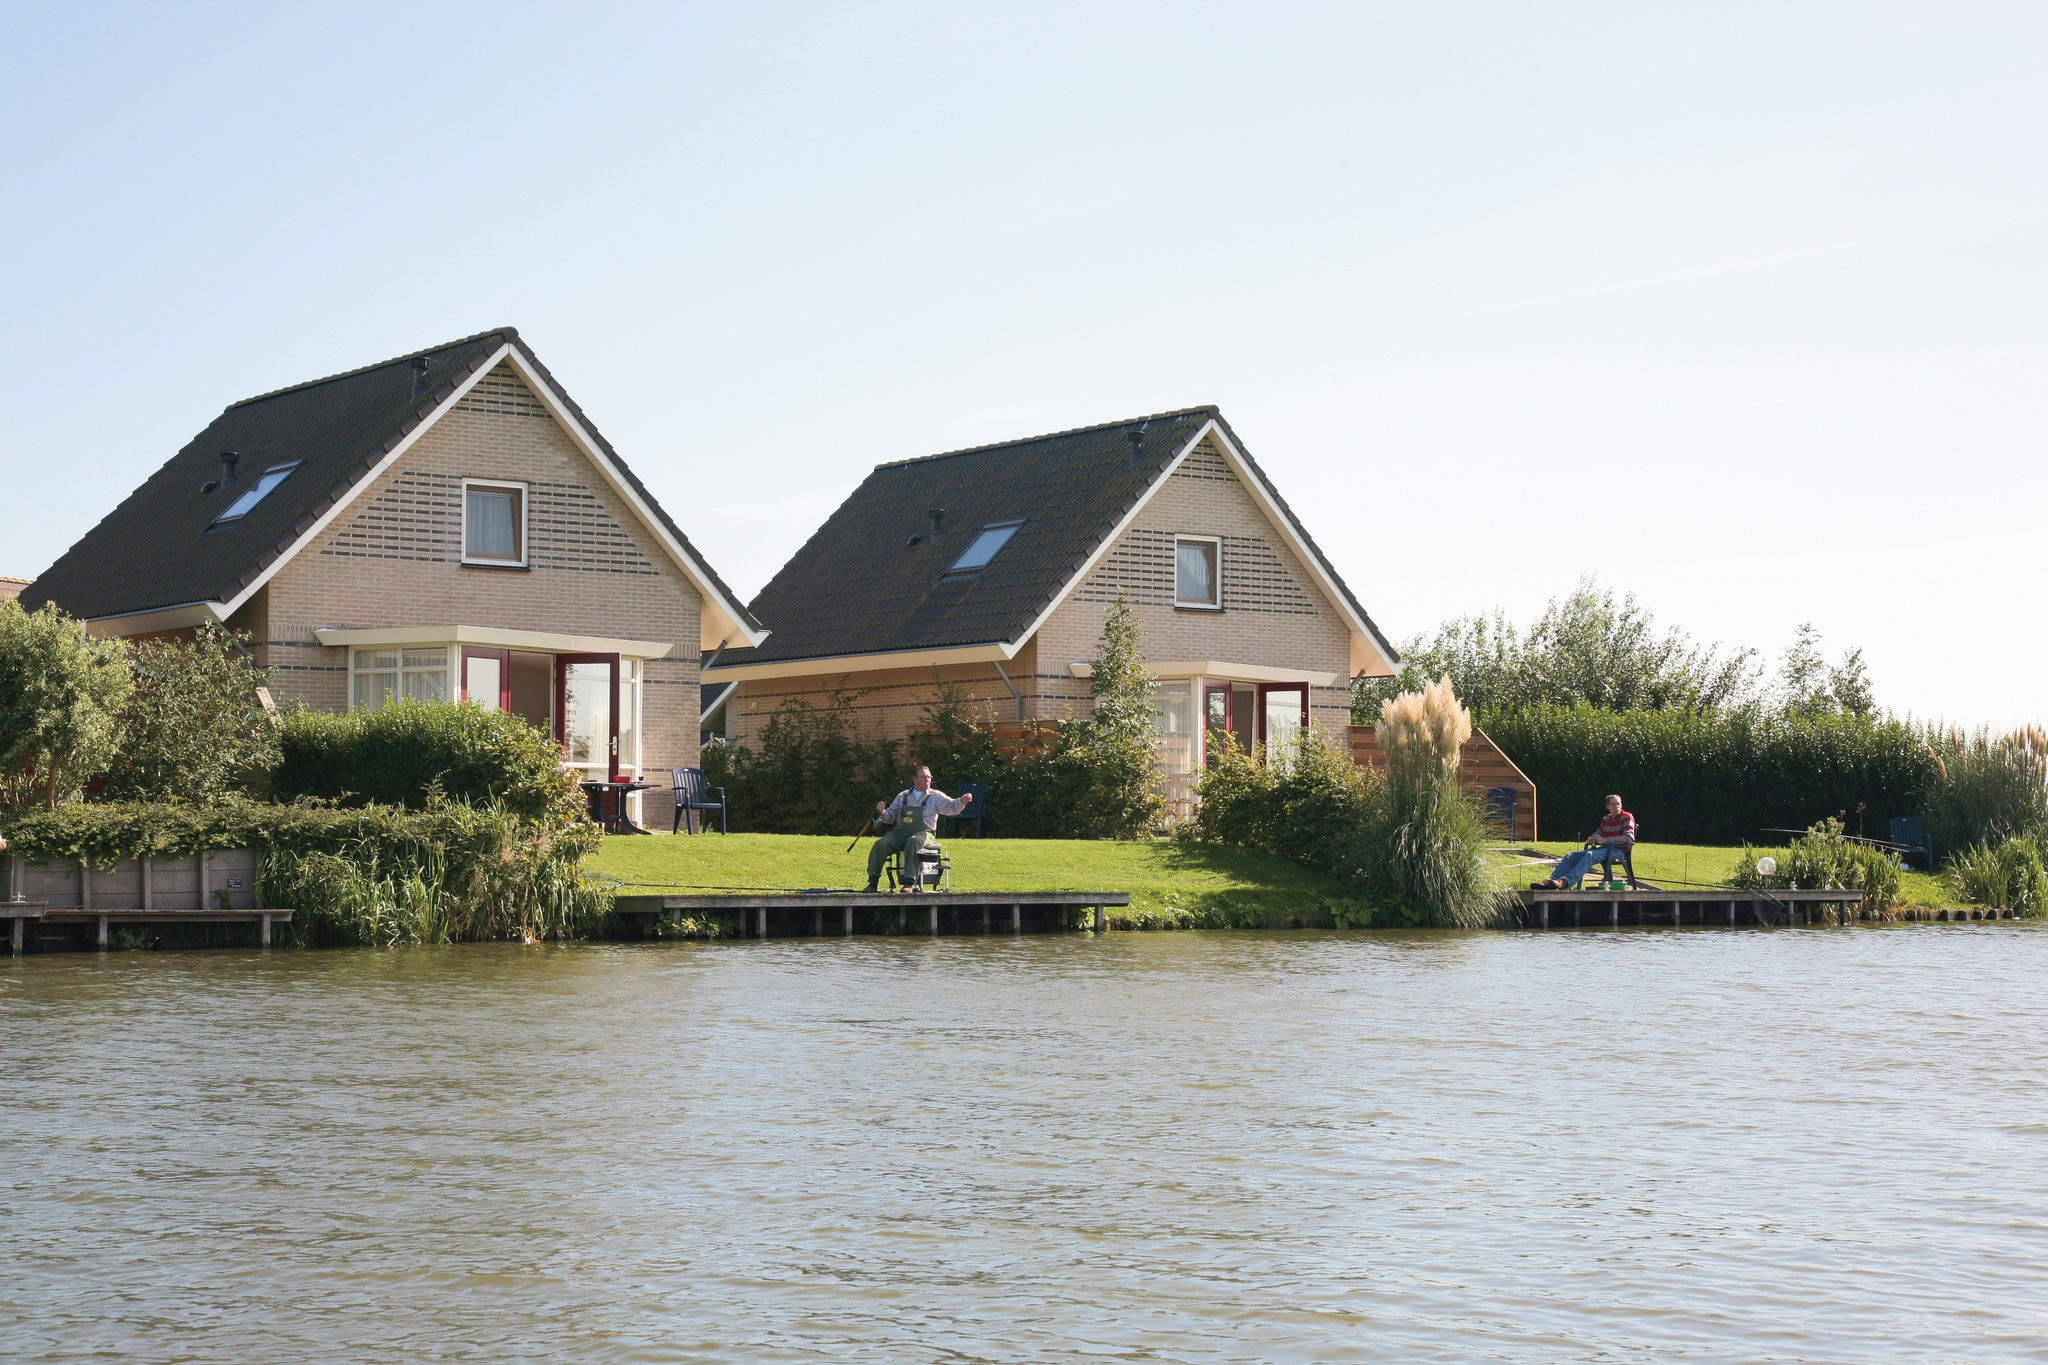 Belle maison avec jetée près de l'IJsselmeer